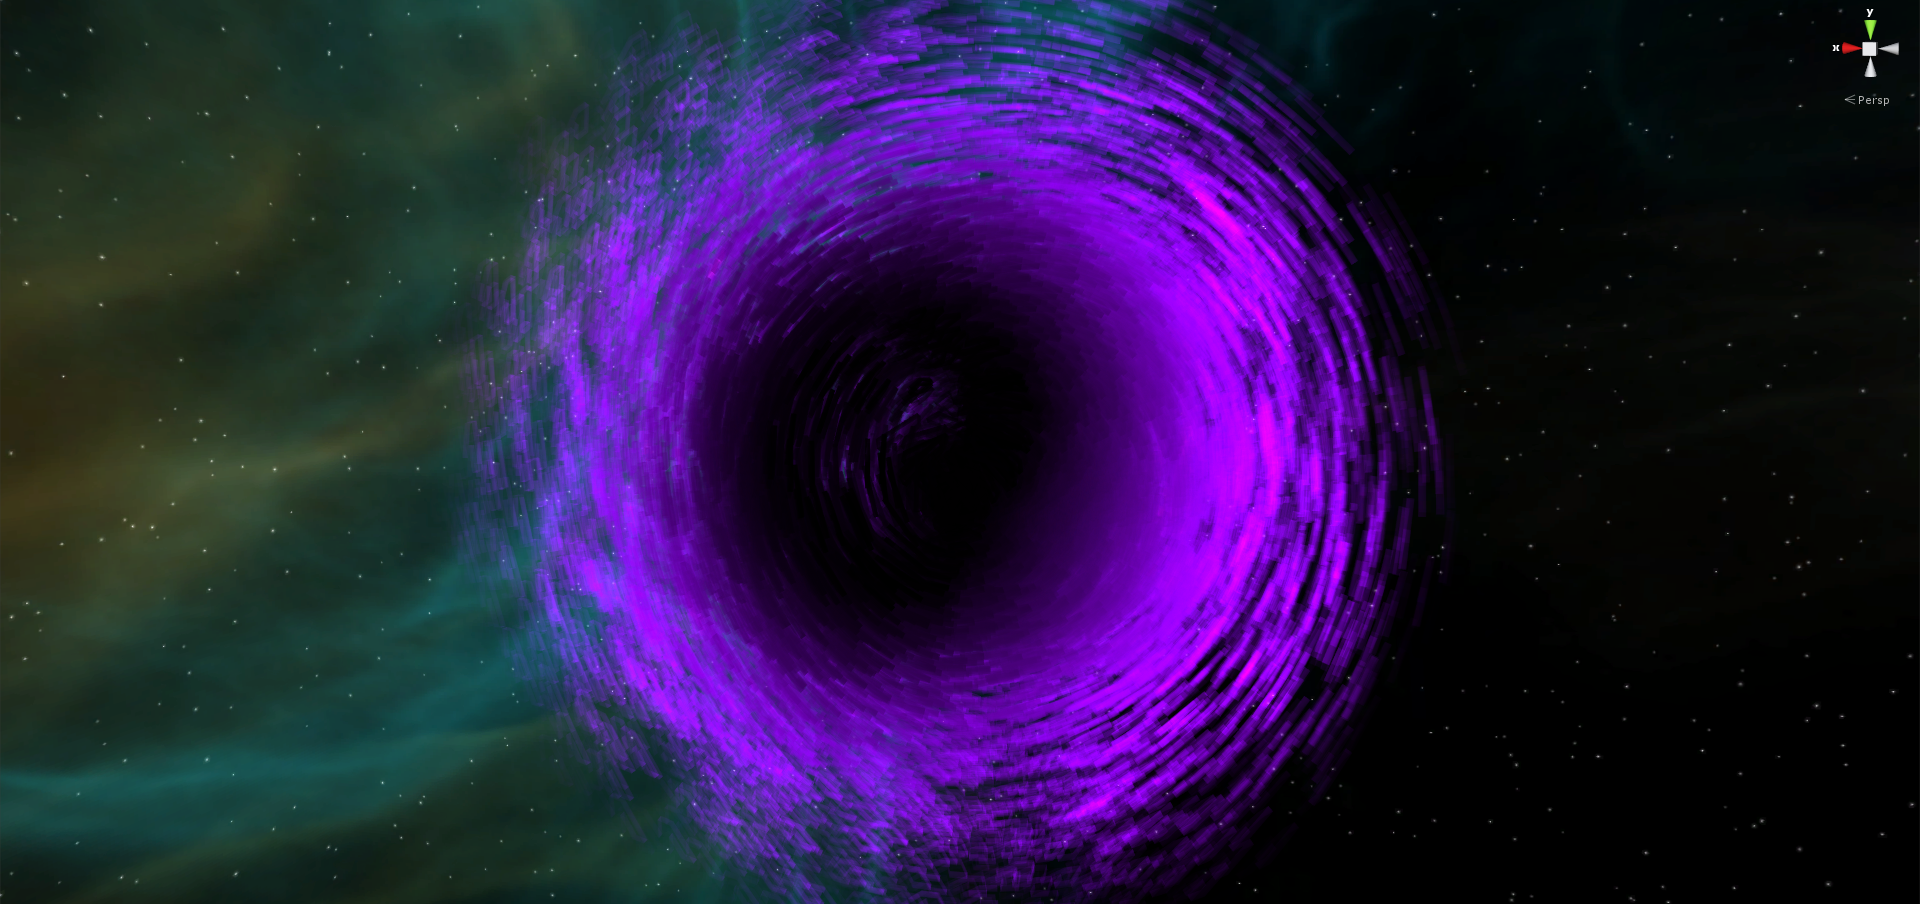 Black Hole image - Galaxon - Indie DB